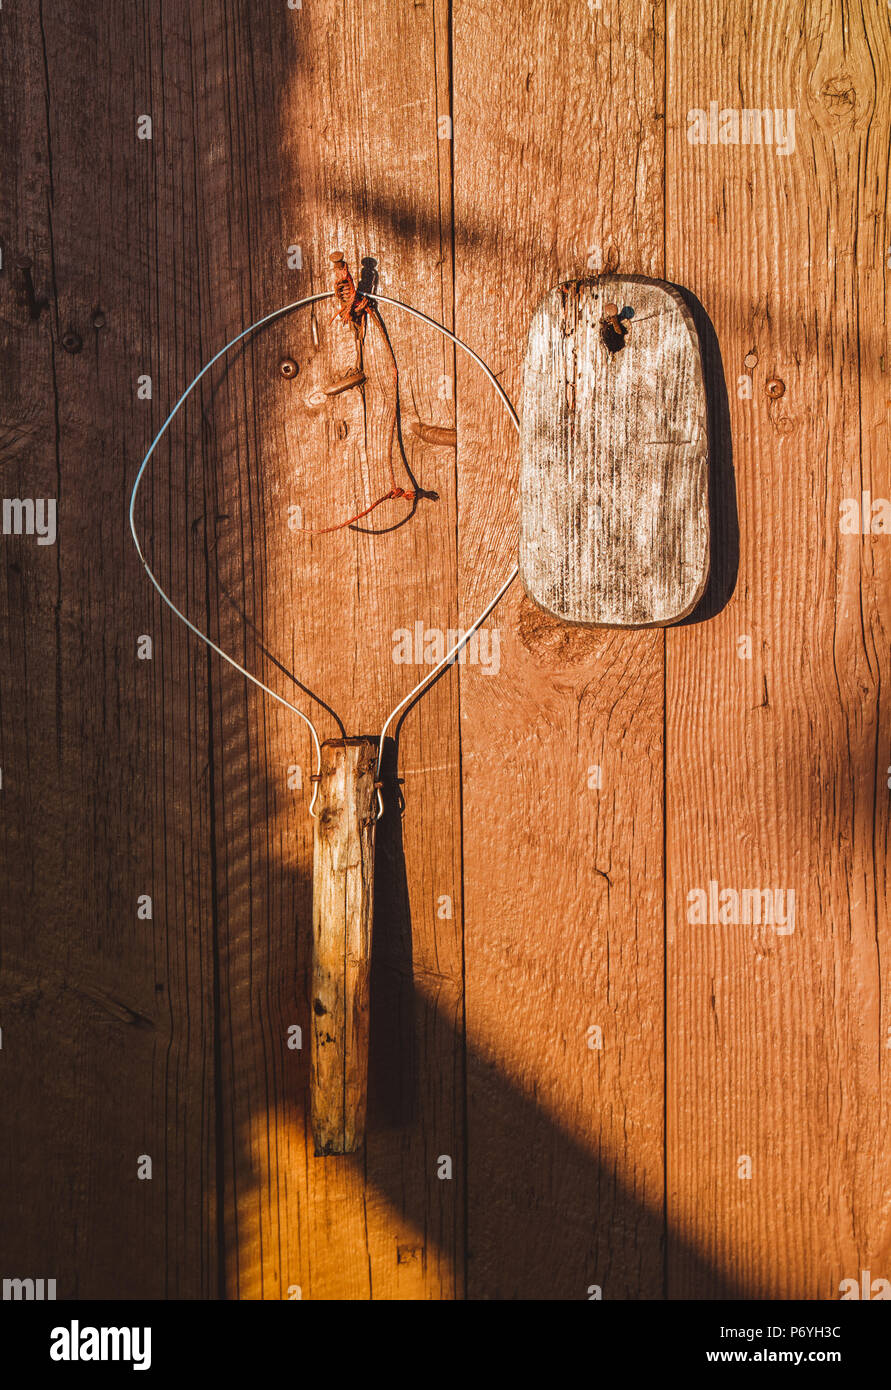 Herramientas de pesca artesanal antiguo colgado en la pared de madera de  color naranja en la luz del sol Fotografía de stock - Alamy